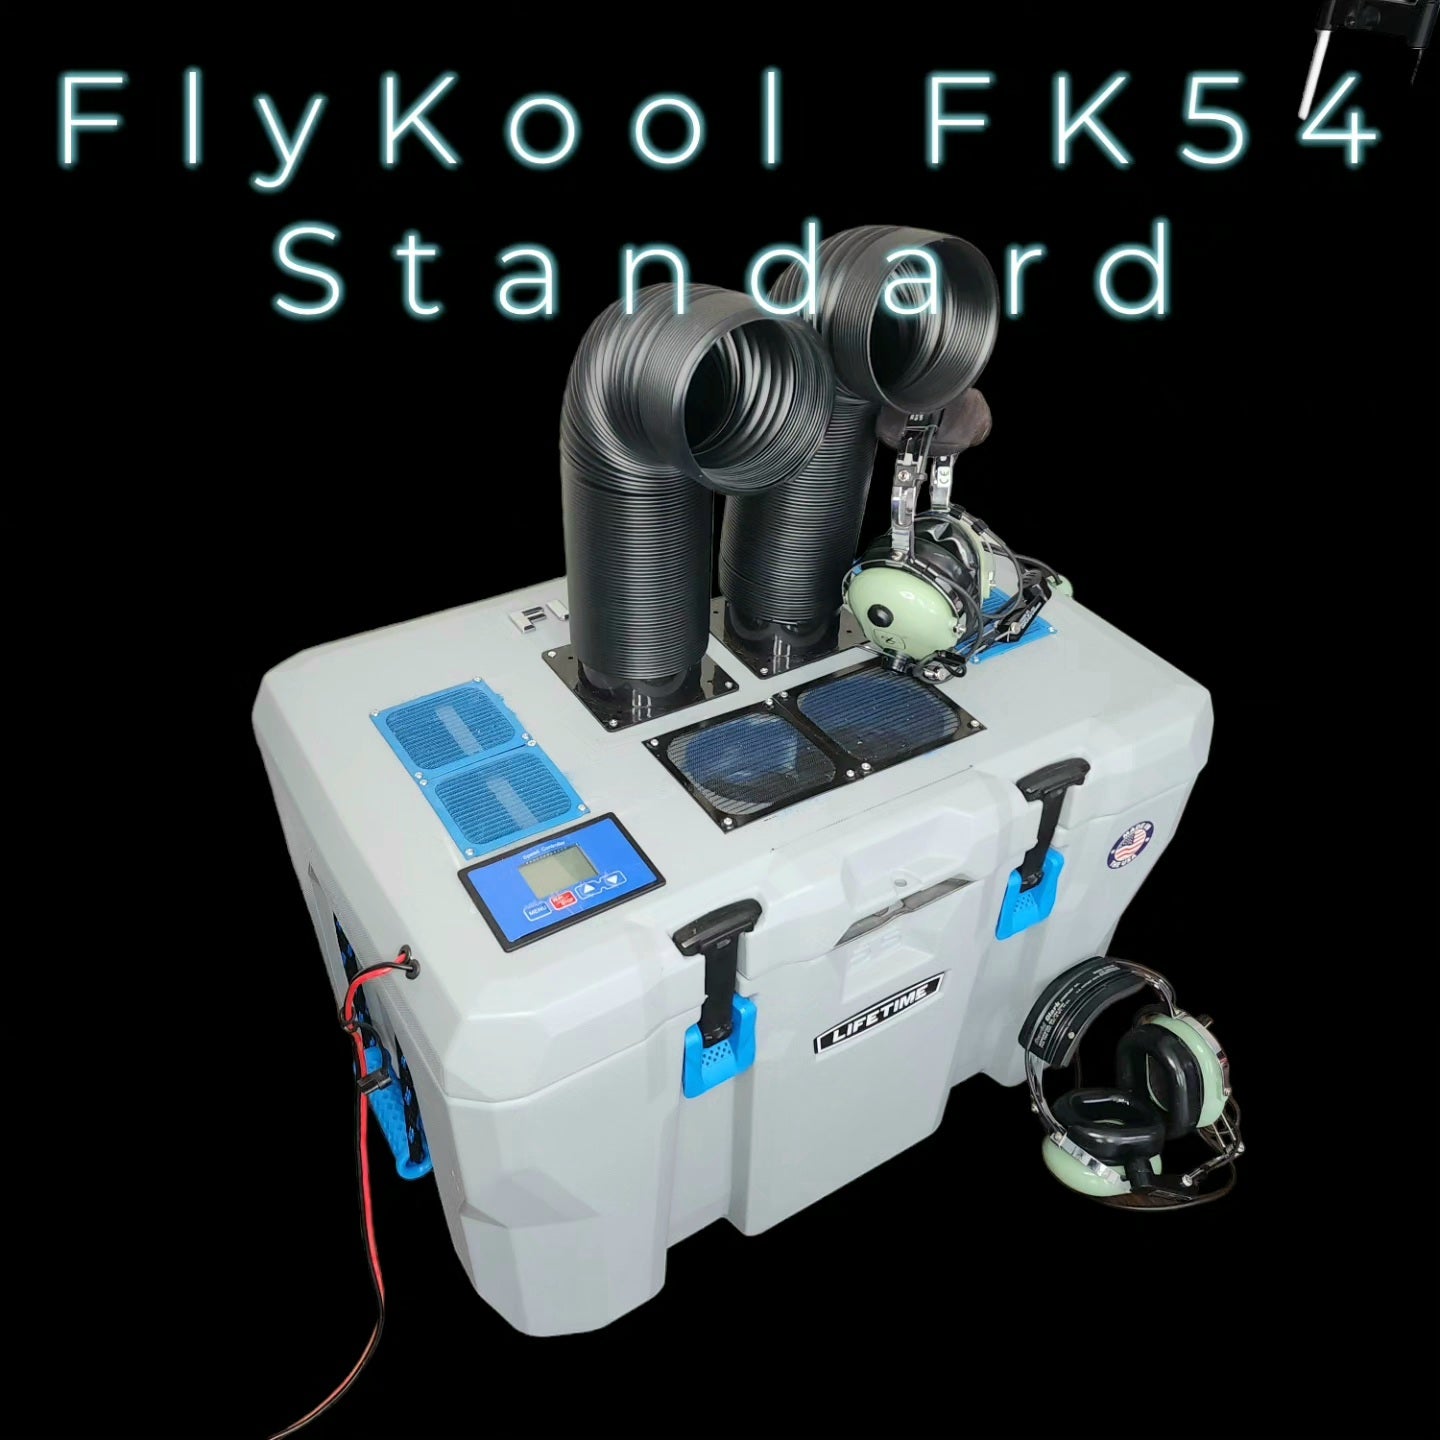 FlyKool FK54 Standard